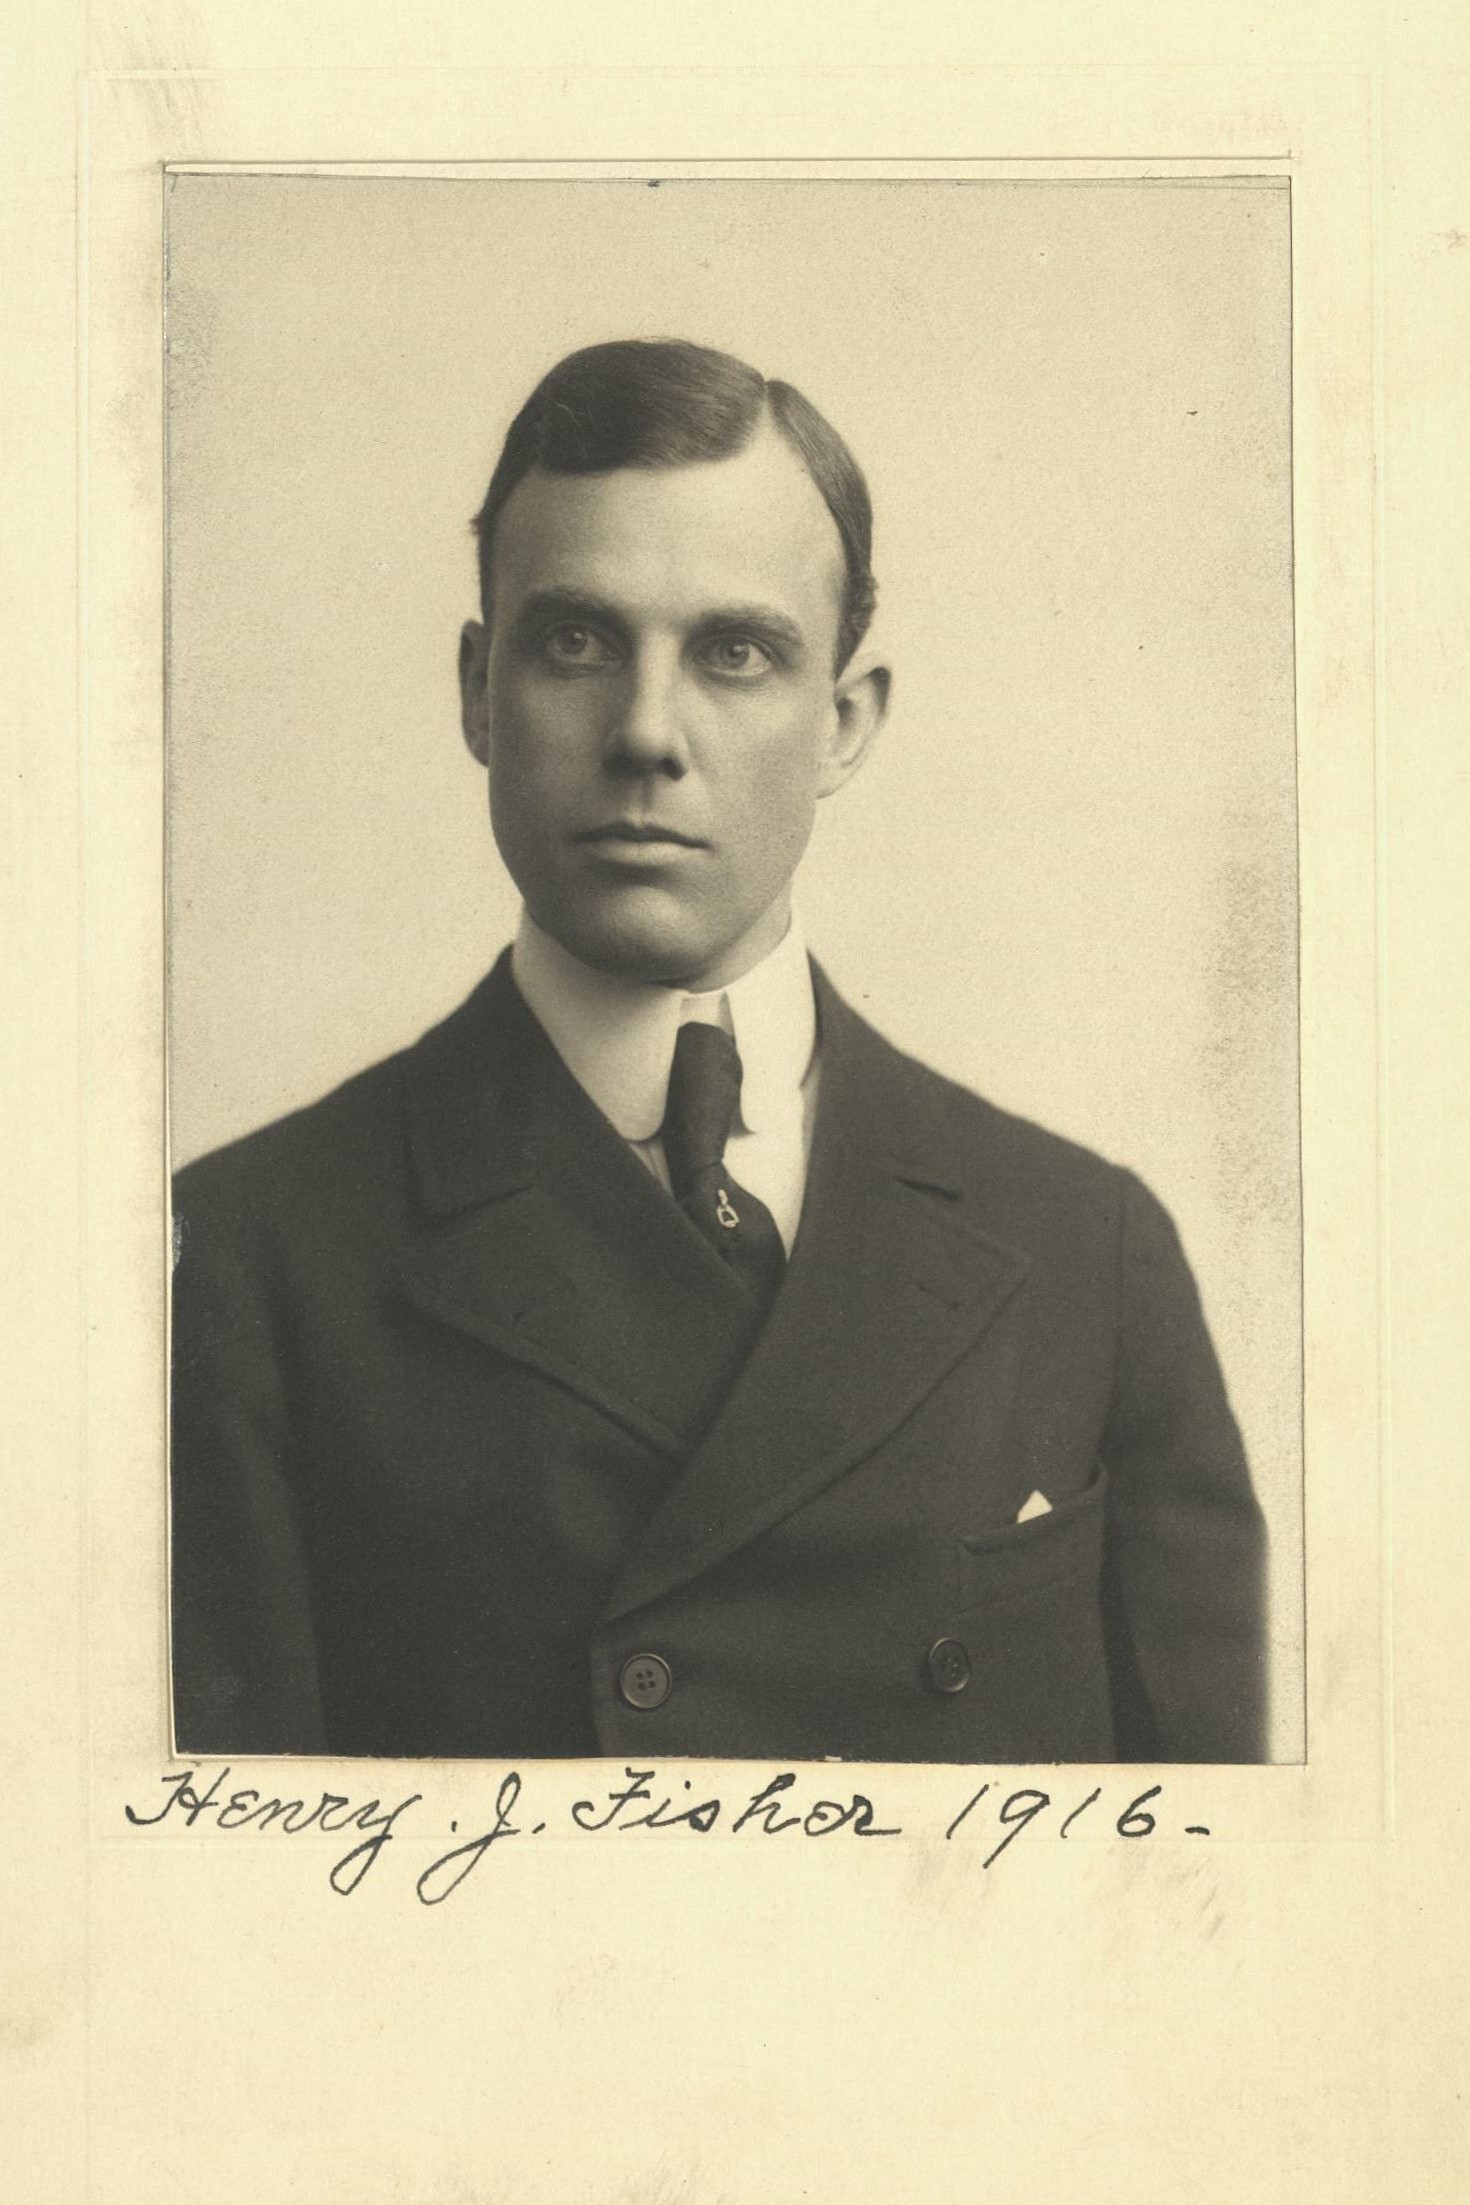 Member portrait of Henry J. Fisher